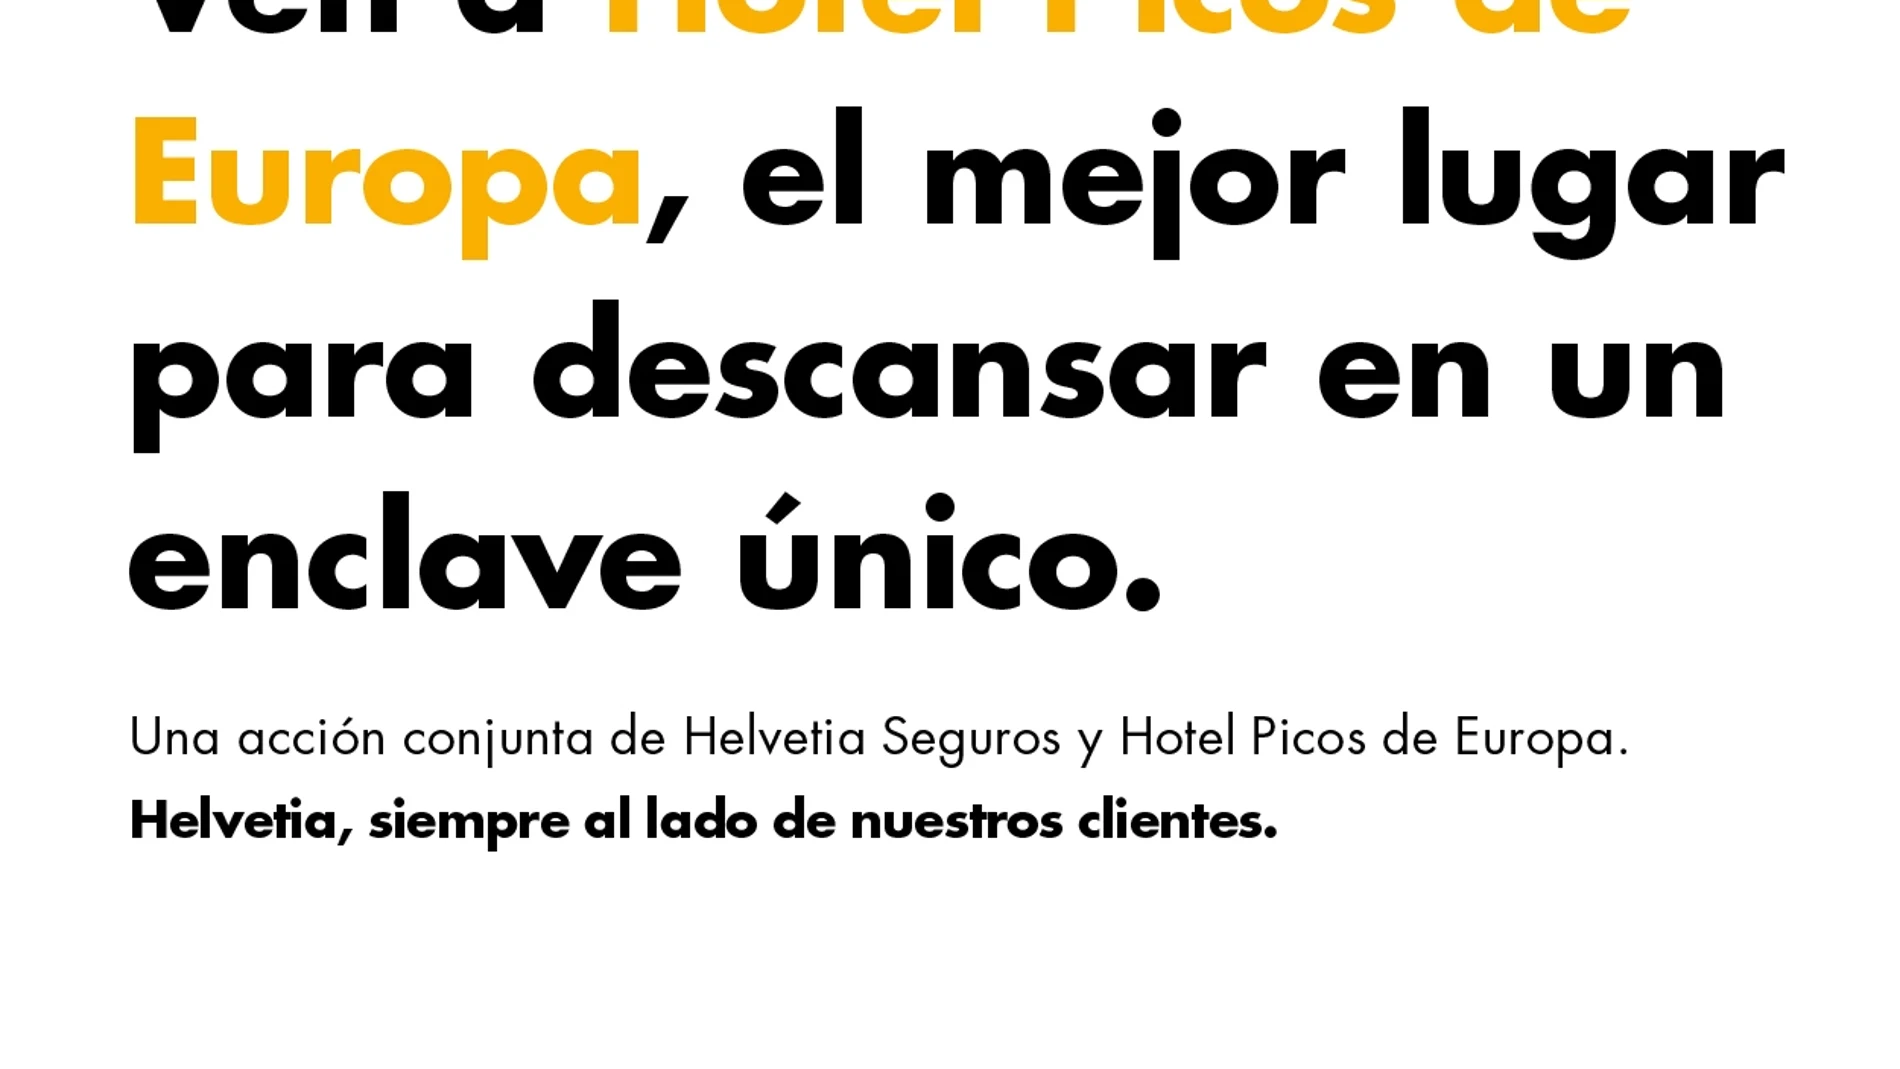 Segunda edición de la campaña publicitaria "Helvetia, siempre junto a nuestros clientes"